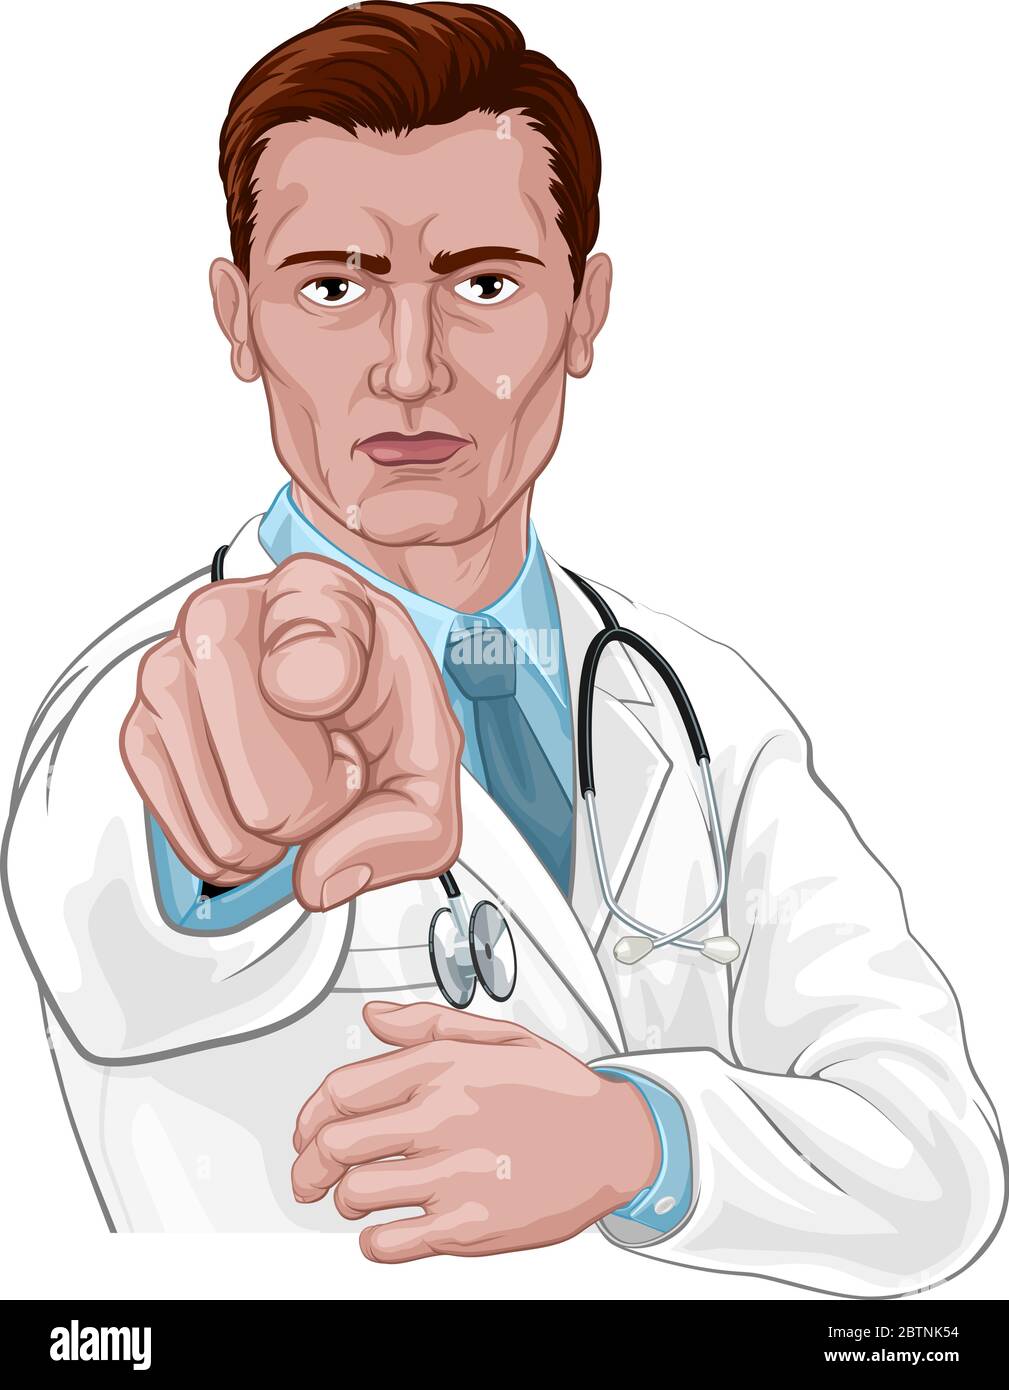 Le médecin veut ou a besoin que vous pointiez le concept médical Illustration de Vecteur